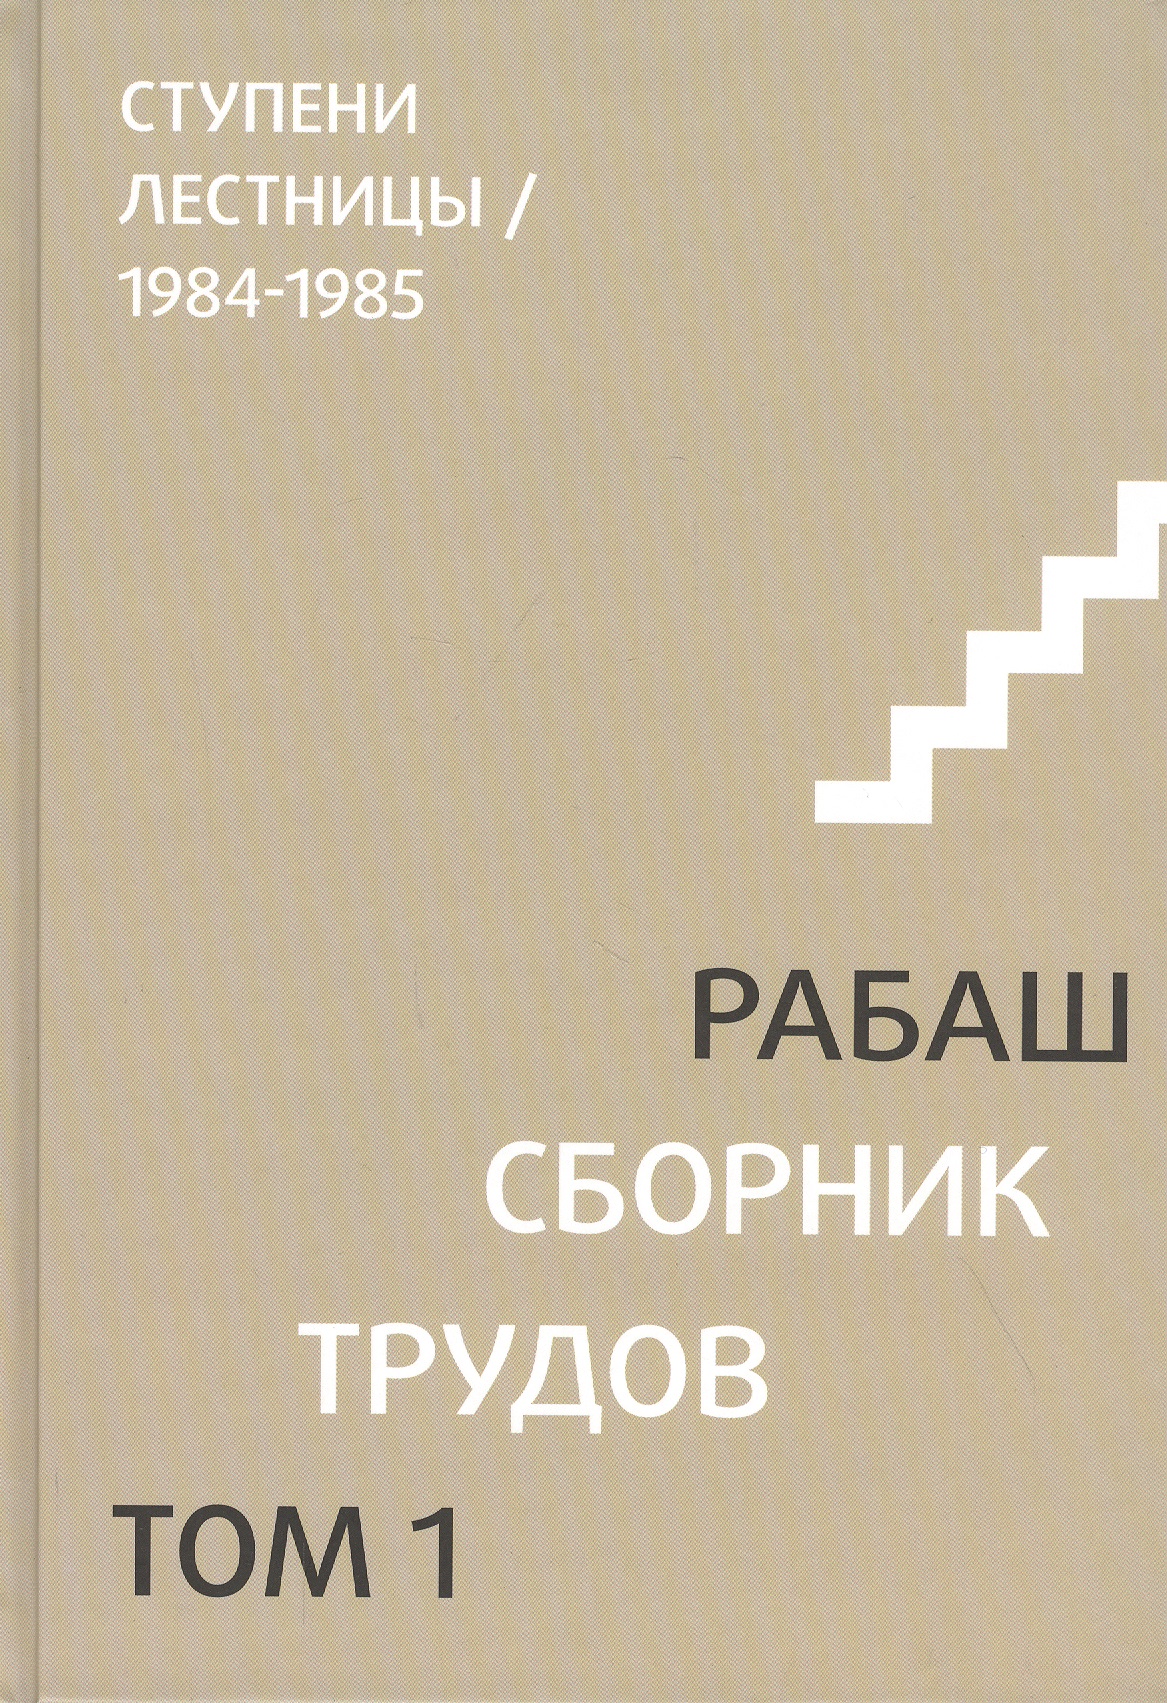 Сборник трудов. Том 1. Ступени лестницы 1984-1985 даргот сулам часть 1